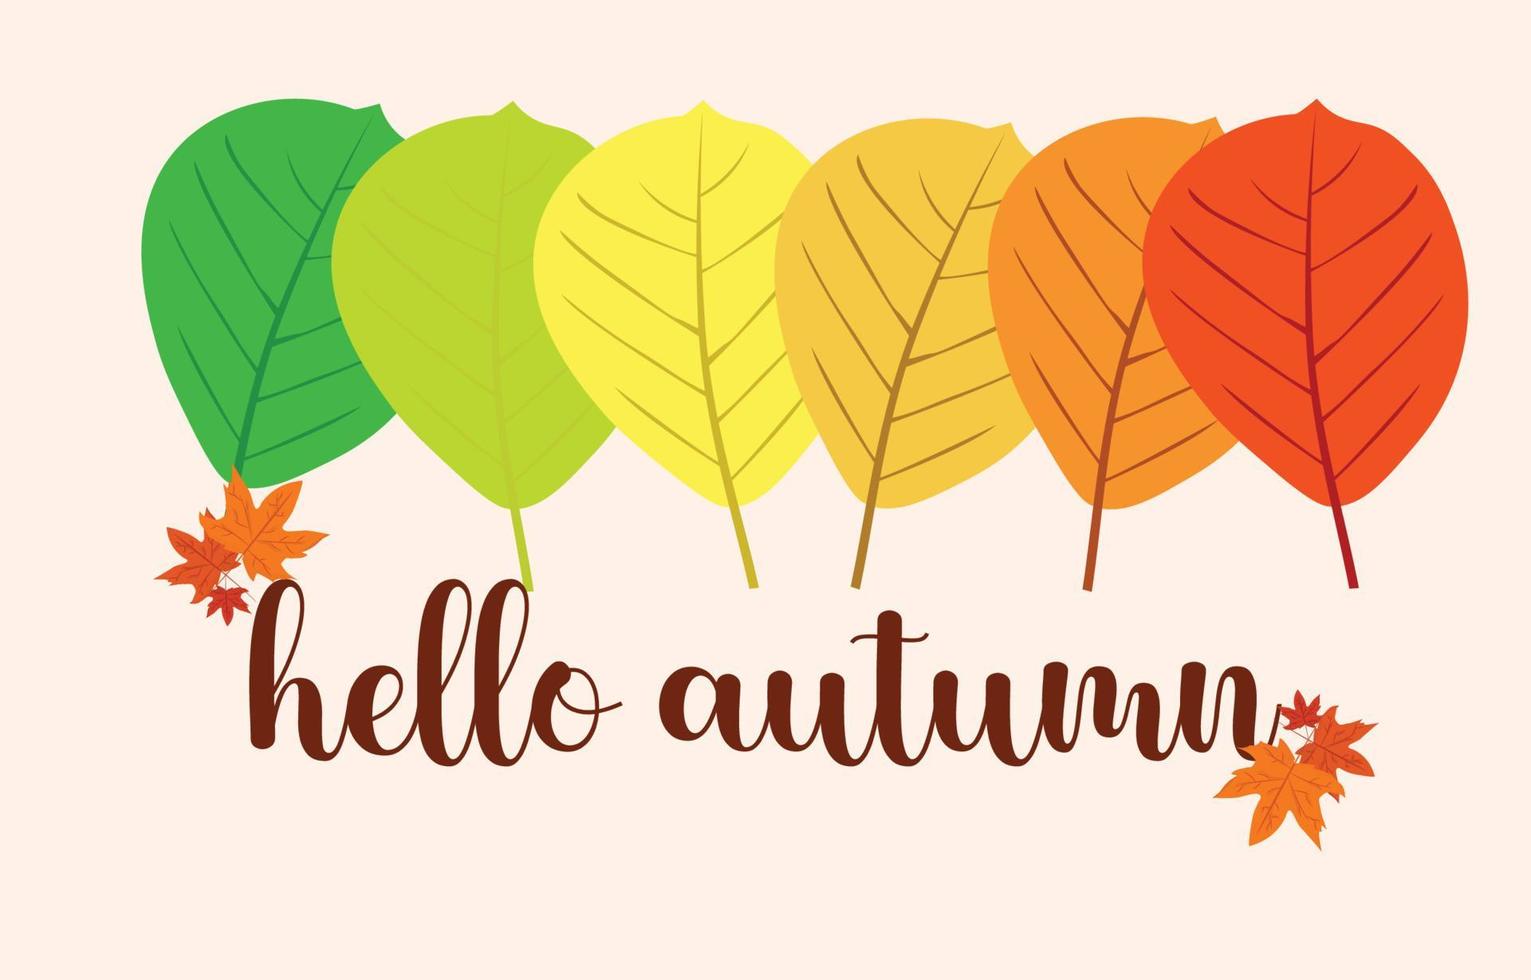 herfst achtergrond met bladeren goudgeel. herfstconcept, voor behang, ansichtkaarten, wenskaarten, webpagina's, banners, online verkoop. vector illustratie